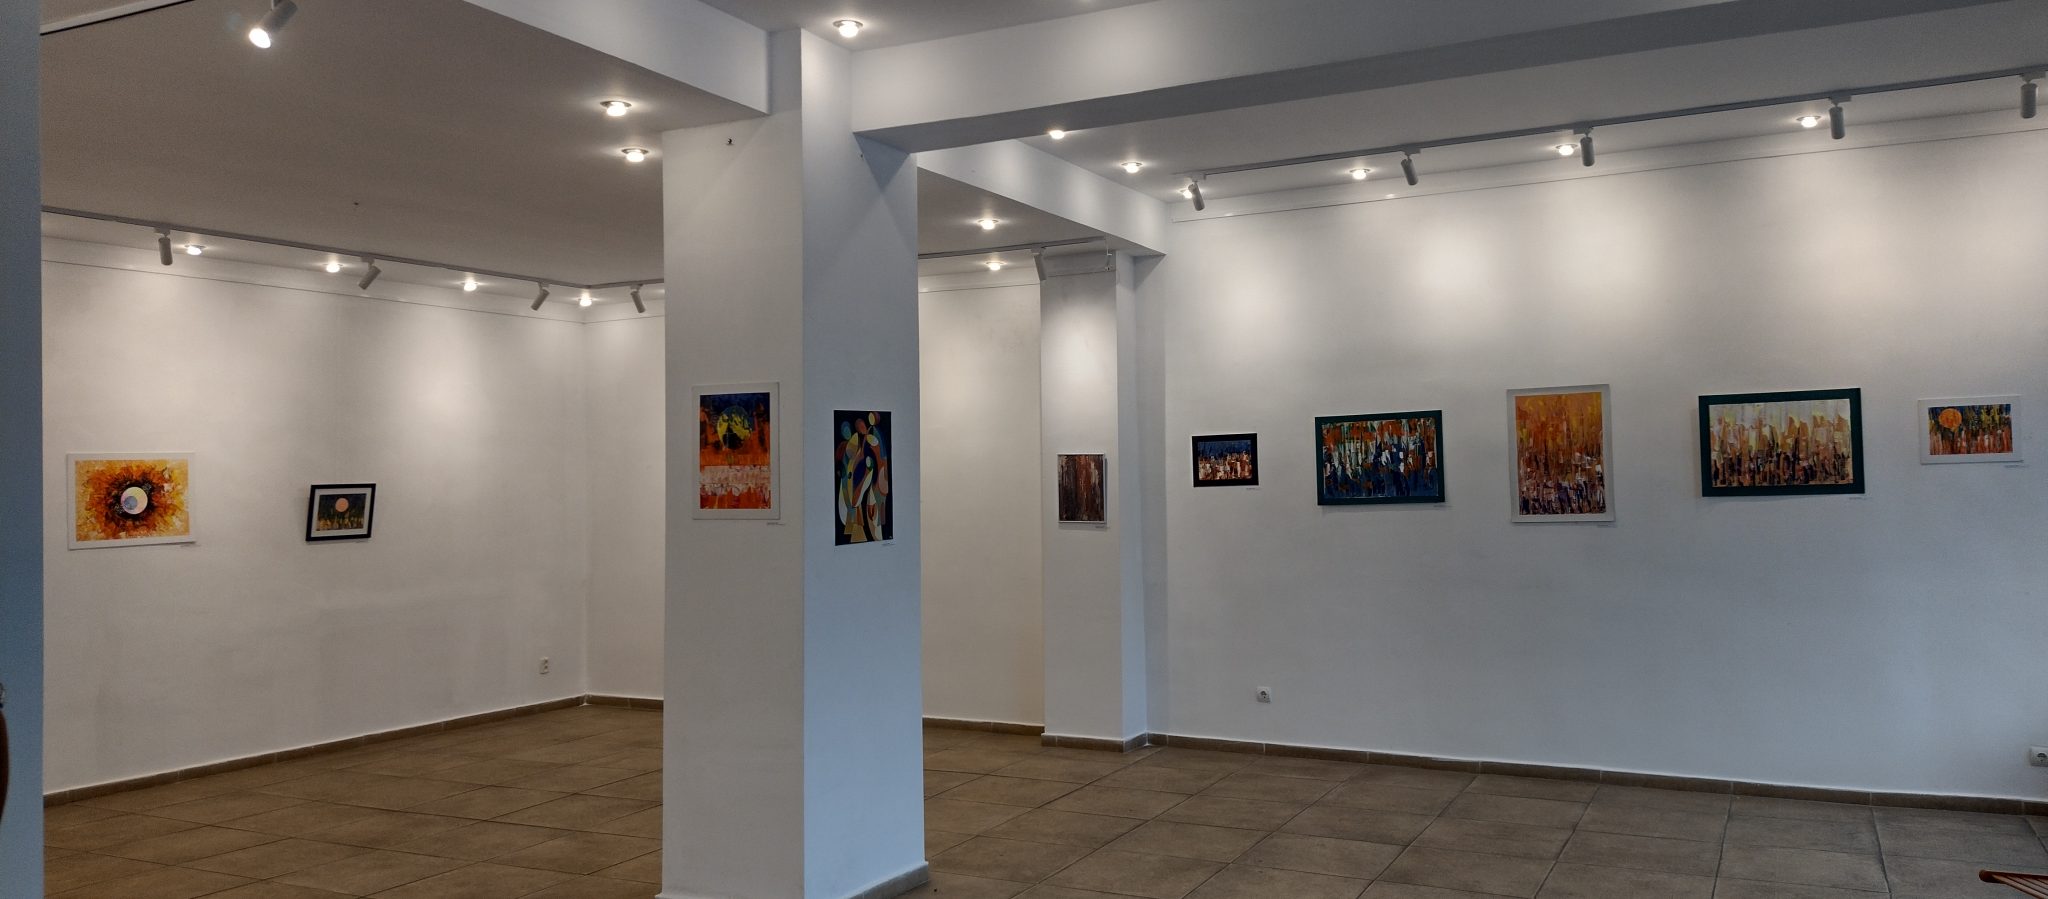 Expoziția ,,Sub semnul soarelui”, la Galeriile Municipale de Artă din Târgu-Jiu